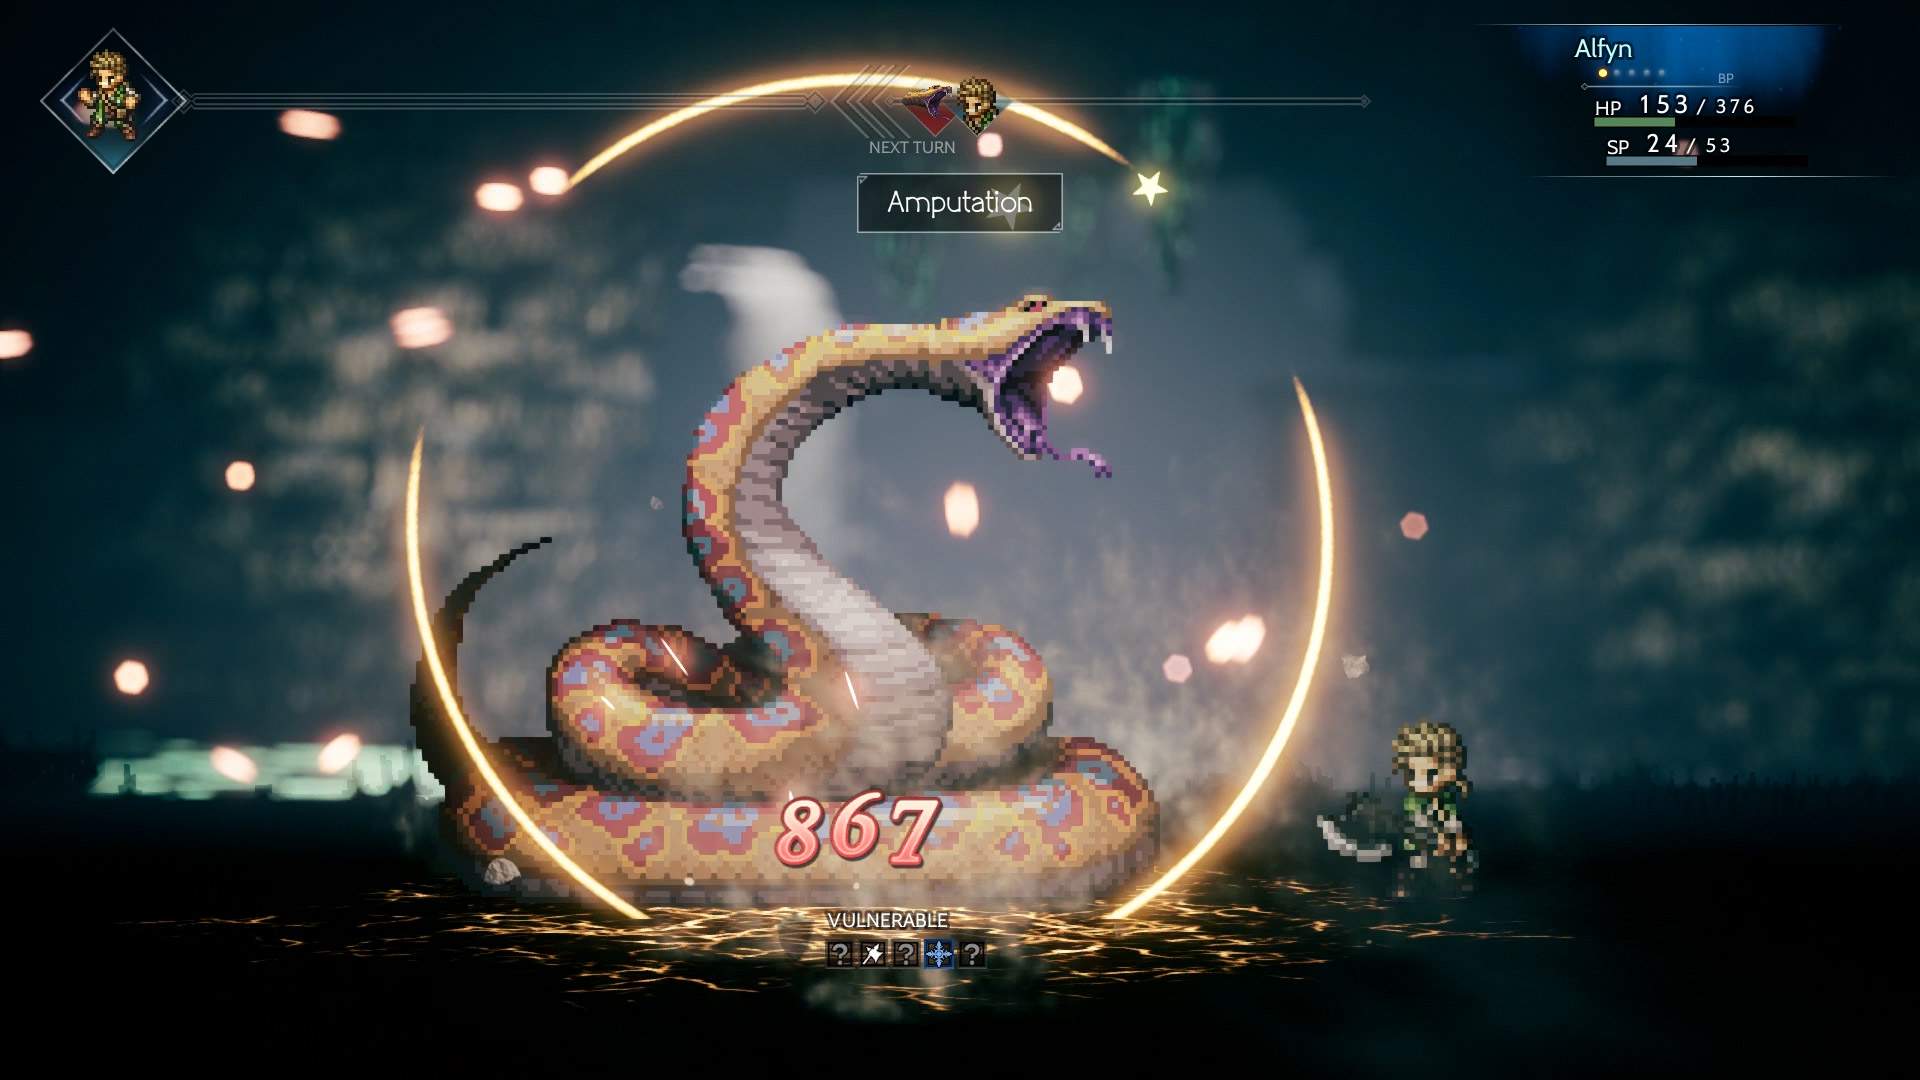 Capture d'écran d'un combat au cours duquel Alfyn attaque un immense serpent dans un donjon.